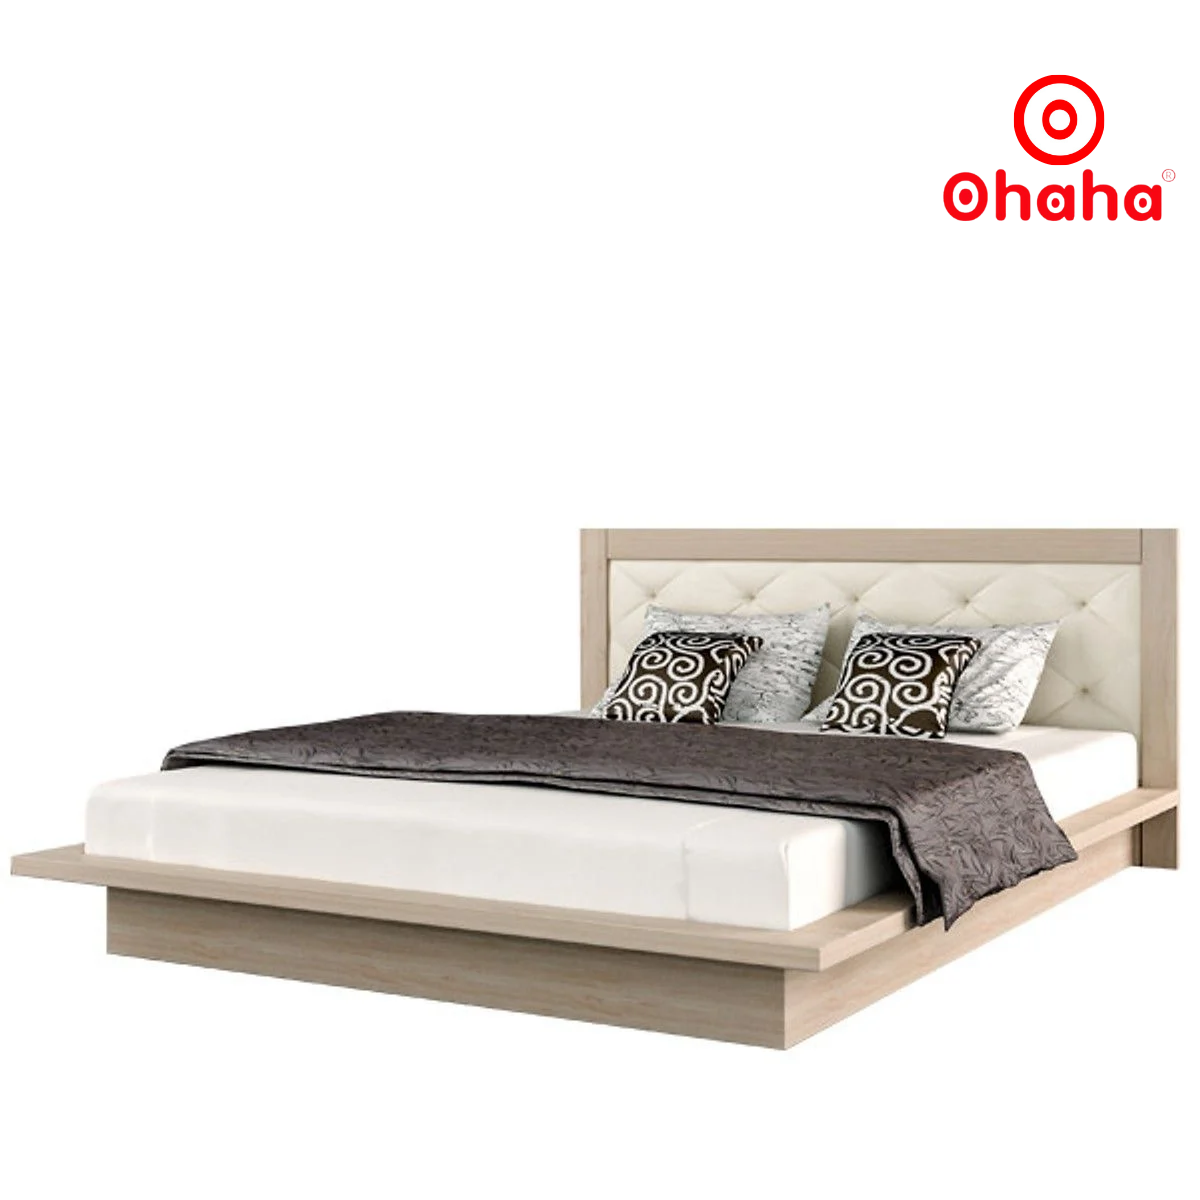 [Miễn phí vận chuyển & lắp đặt] Giường ngủ thông minh cao cấp bọc nệm đầu giường có hộc kéo gỗ công nghiệp Ohaha - GN021